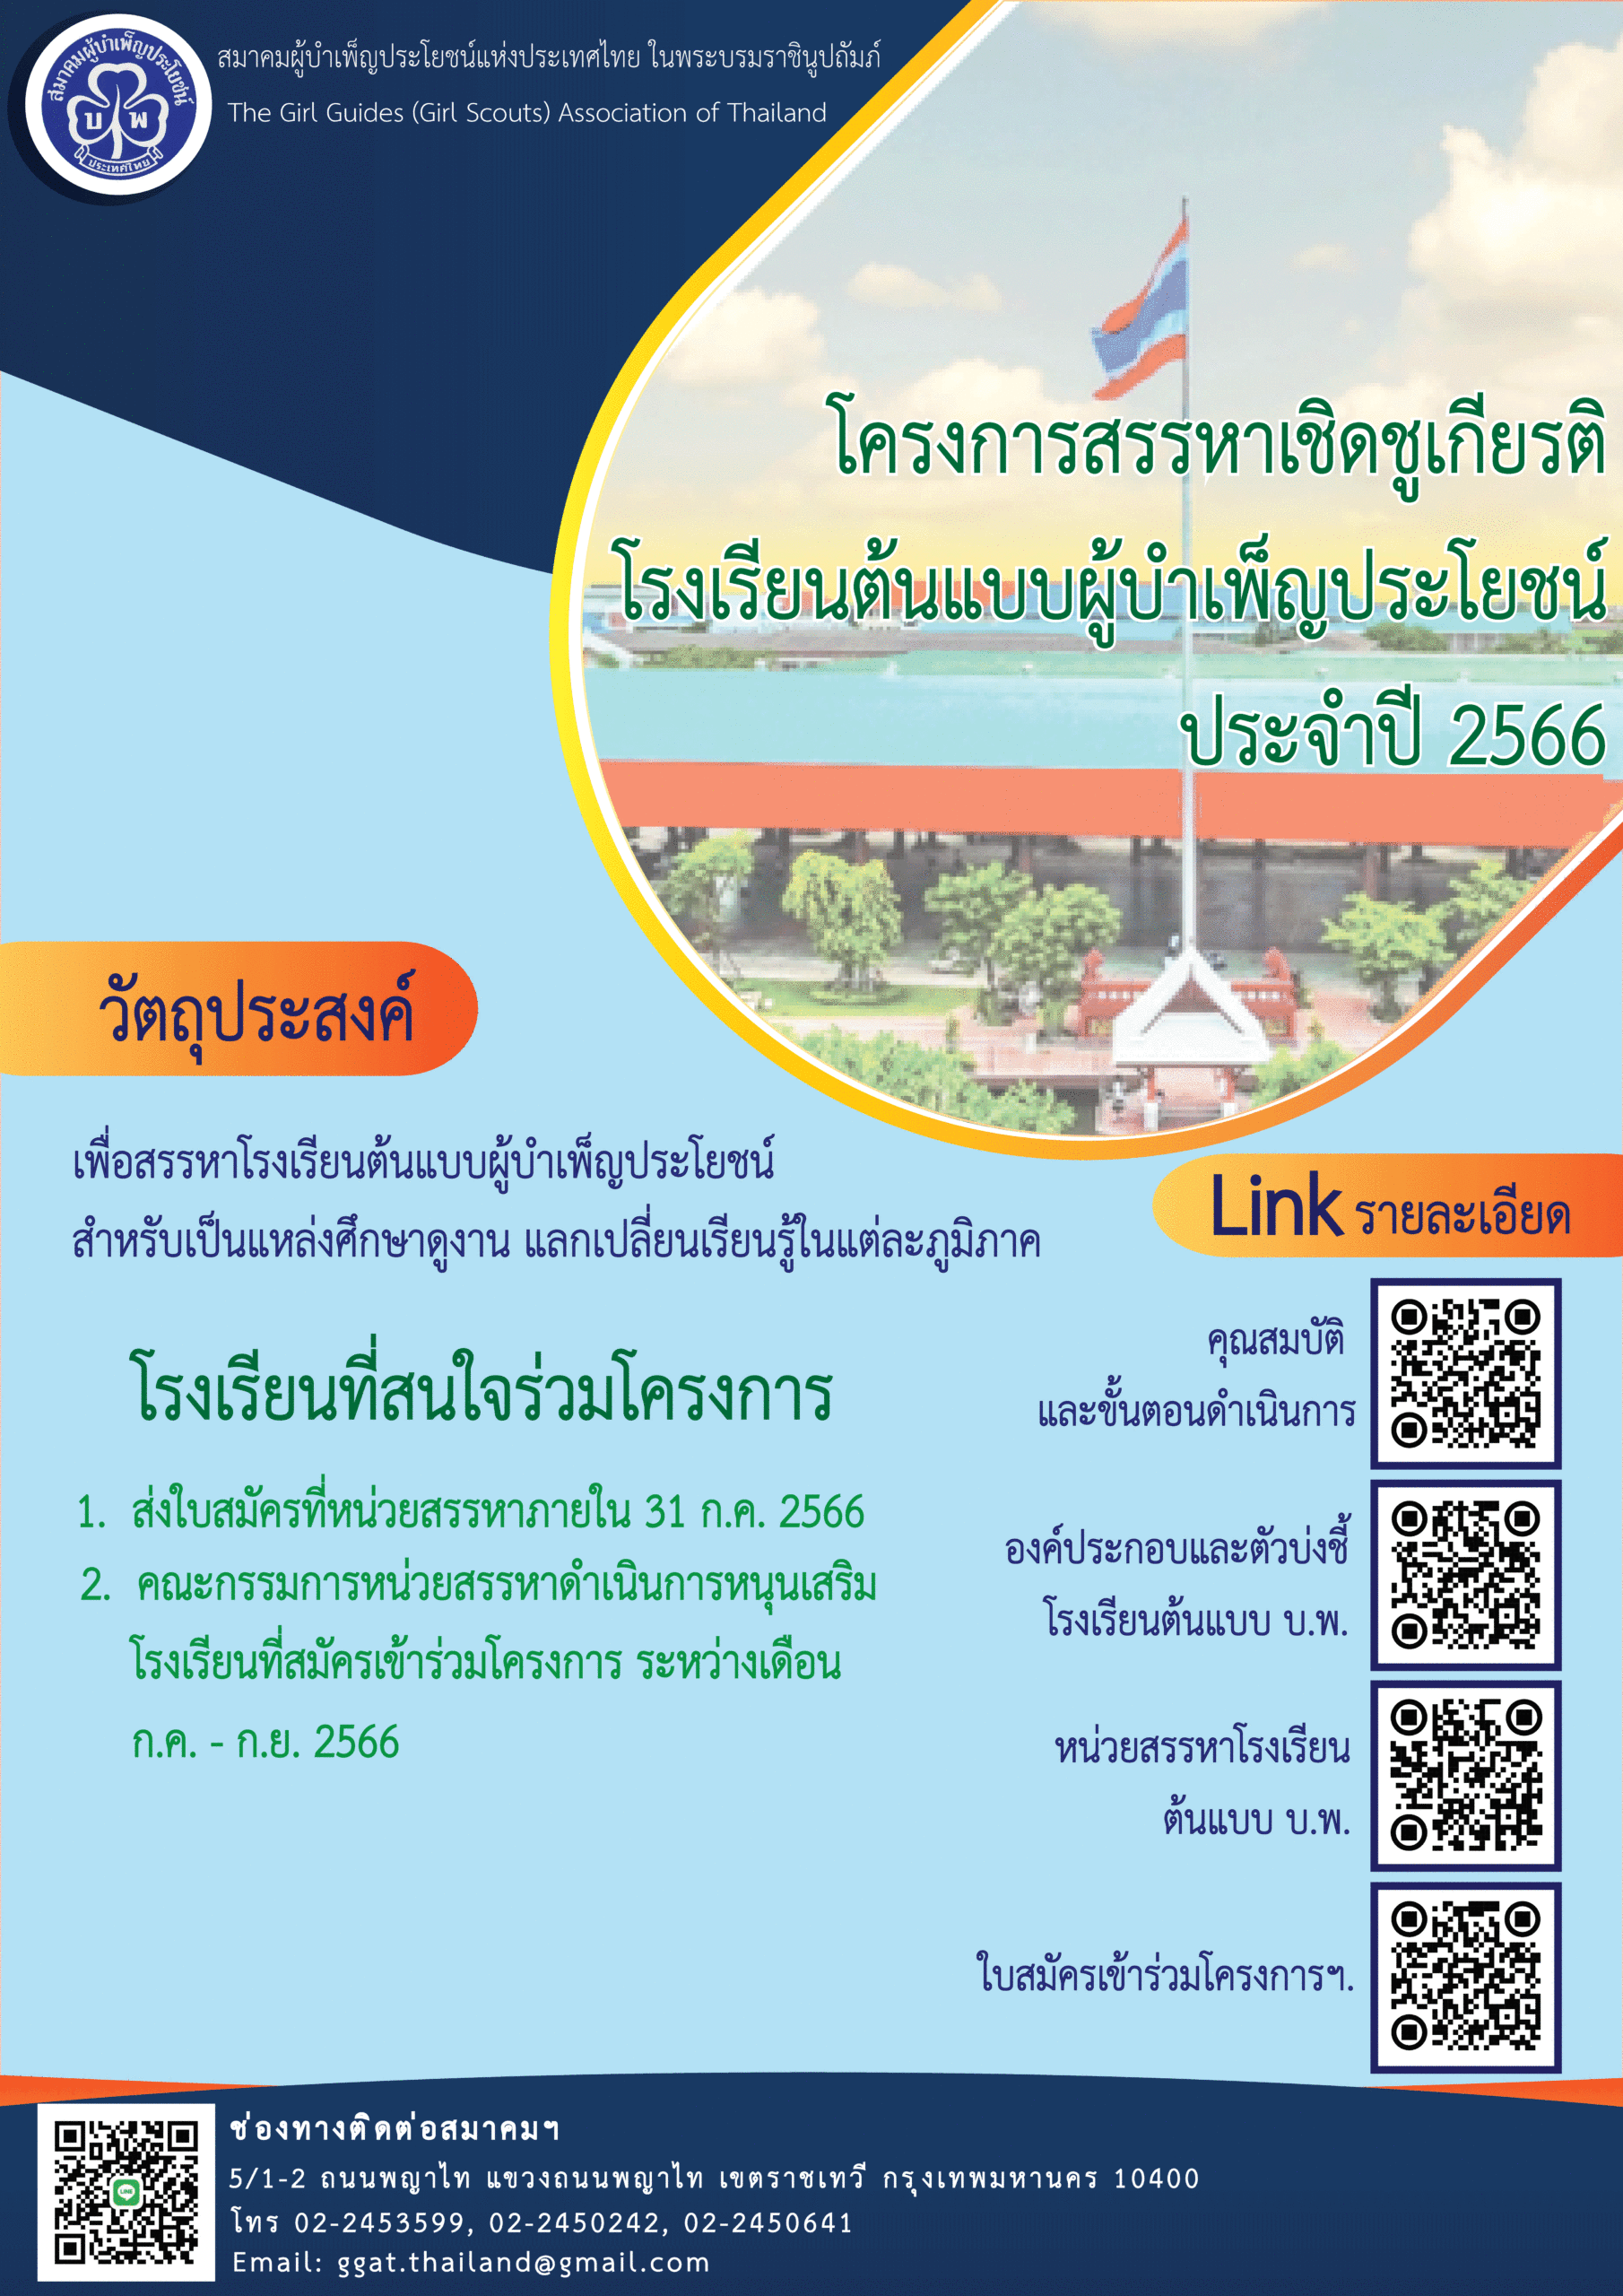 ประกาศ: การสมัครเข้าสรรหาโรงเรียนต้นแบบผู้บำเพ็ญประโยชน์ สมาคมผู้บำเพ็ญประโยชน์แห่งประเทศไทย ในพระบรมราชินูปถัมภ์